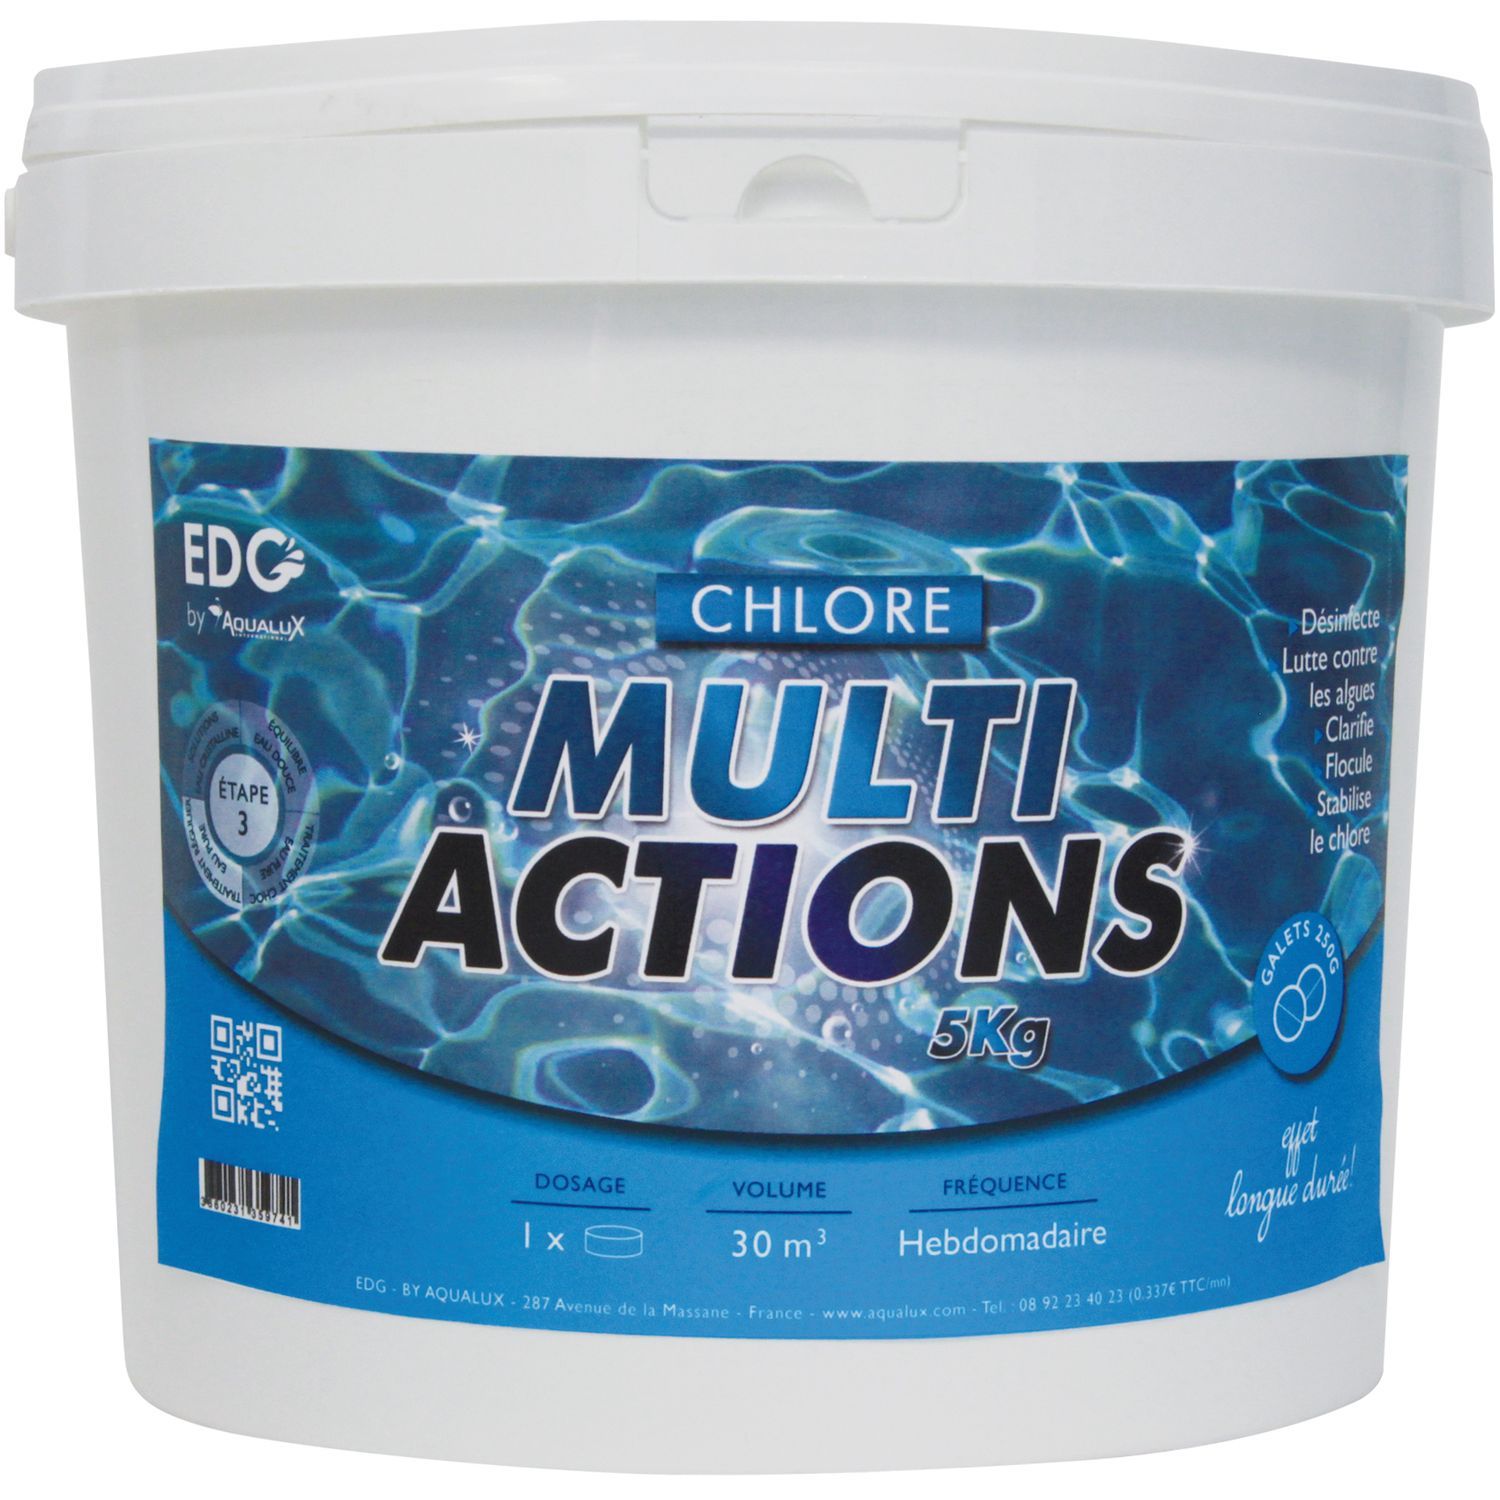 EDG By Aqualux Chlore multi actions galets 250g - Seau de 5 kg pas cher 